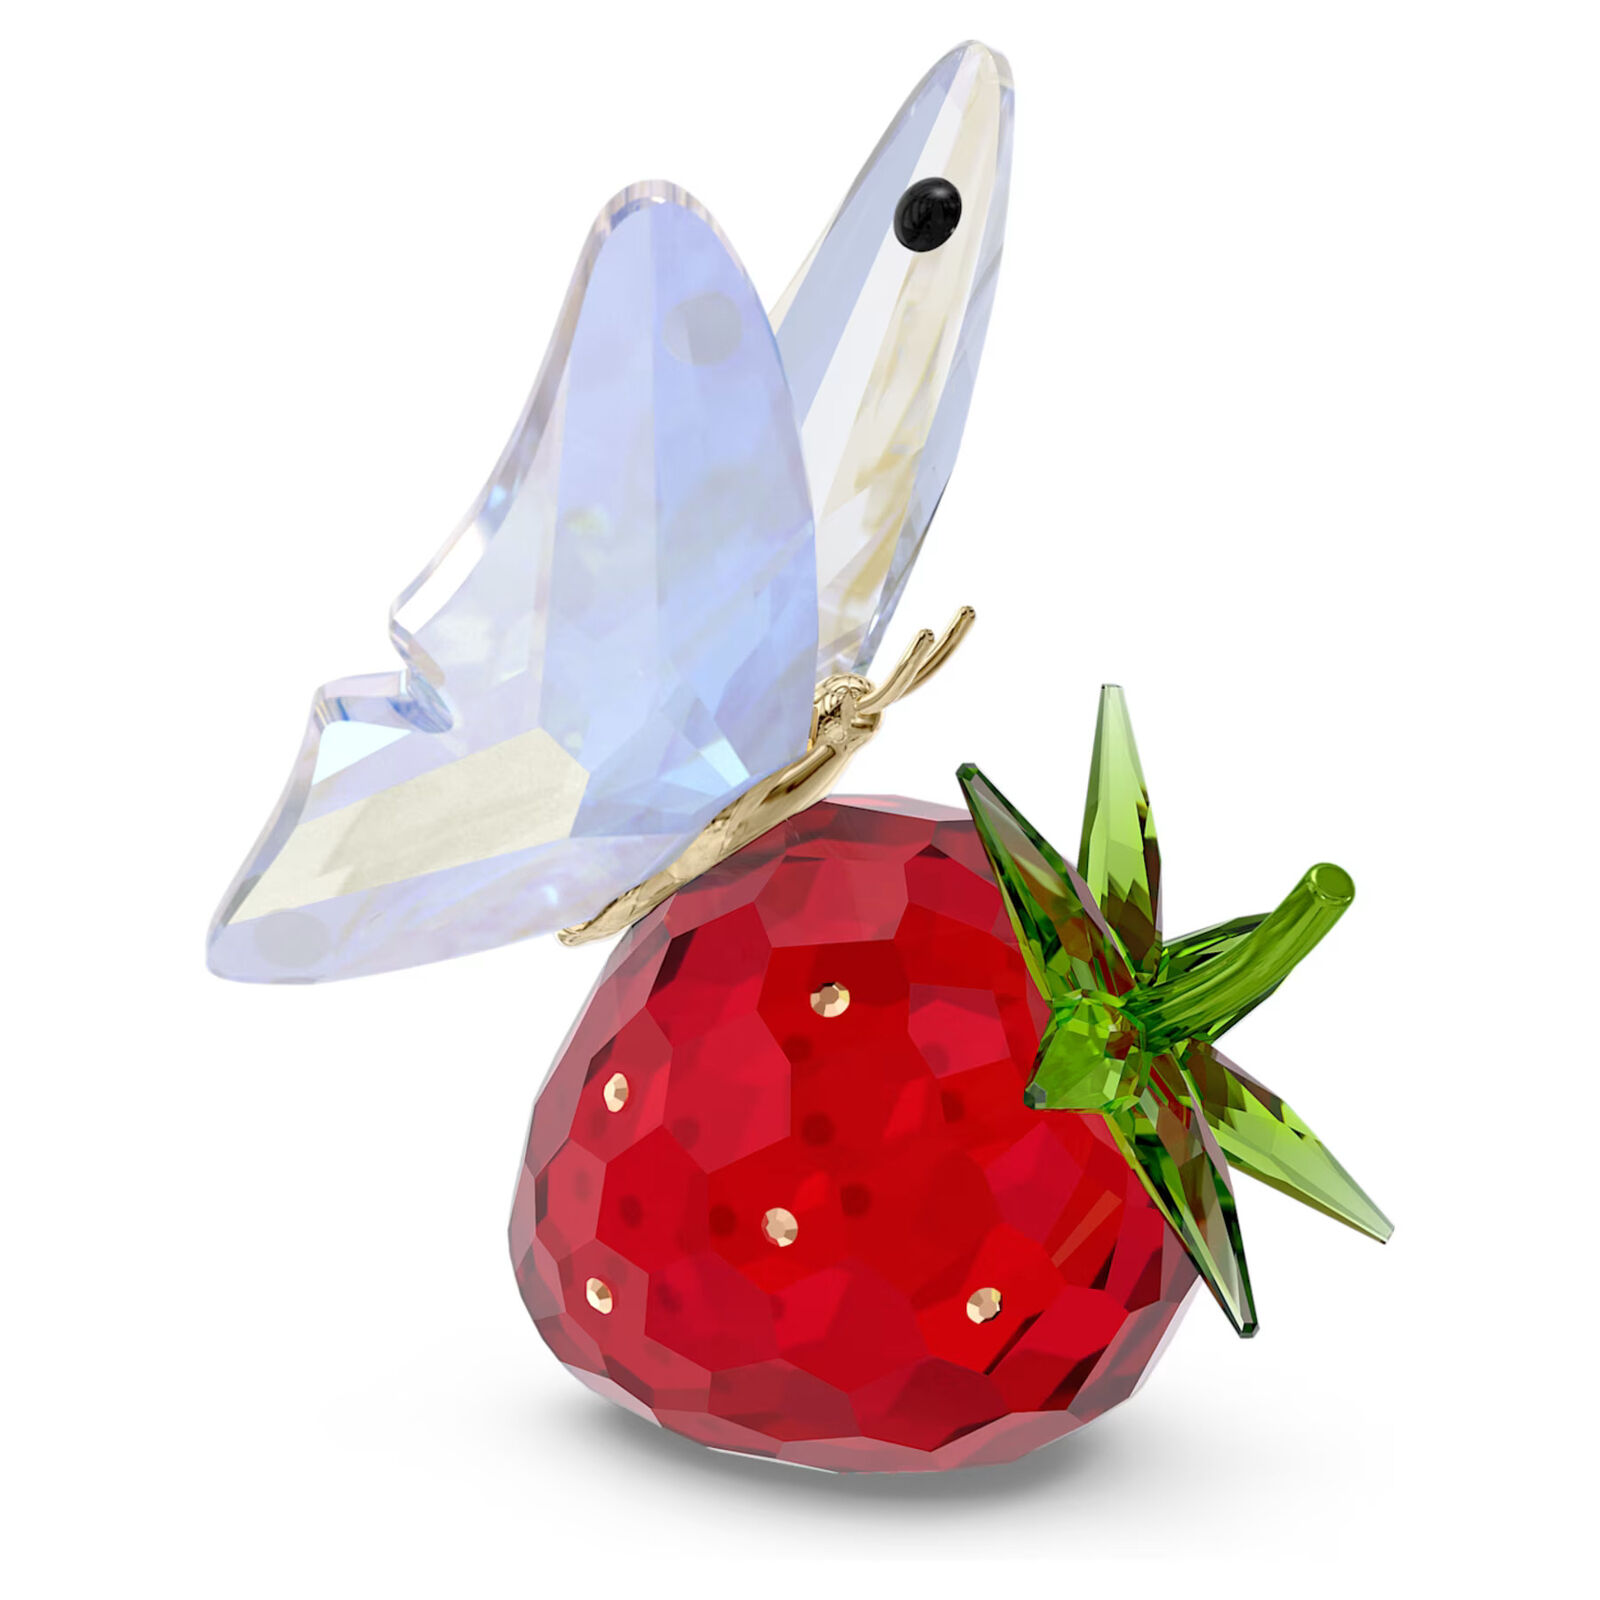 Swarovski Crystal Idyllia Butterfly and Strawberry Figurine Decoration 5666846